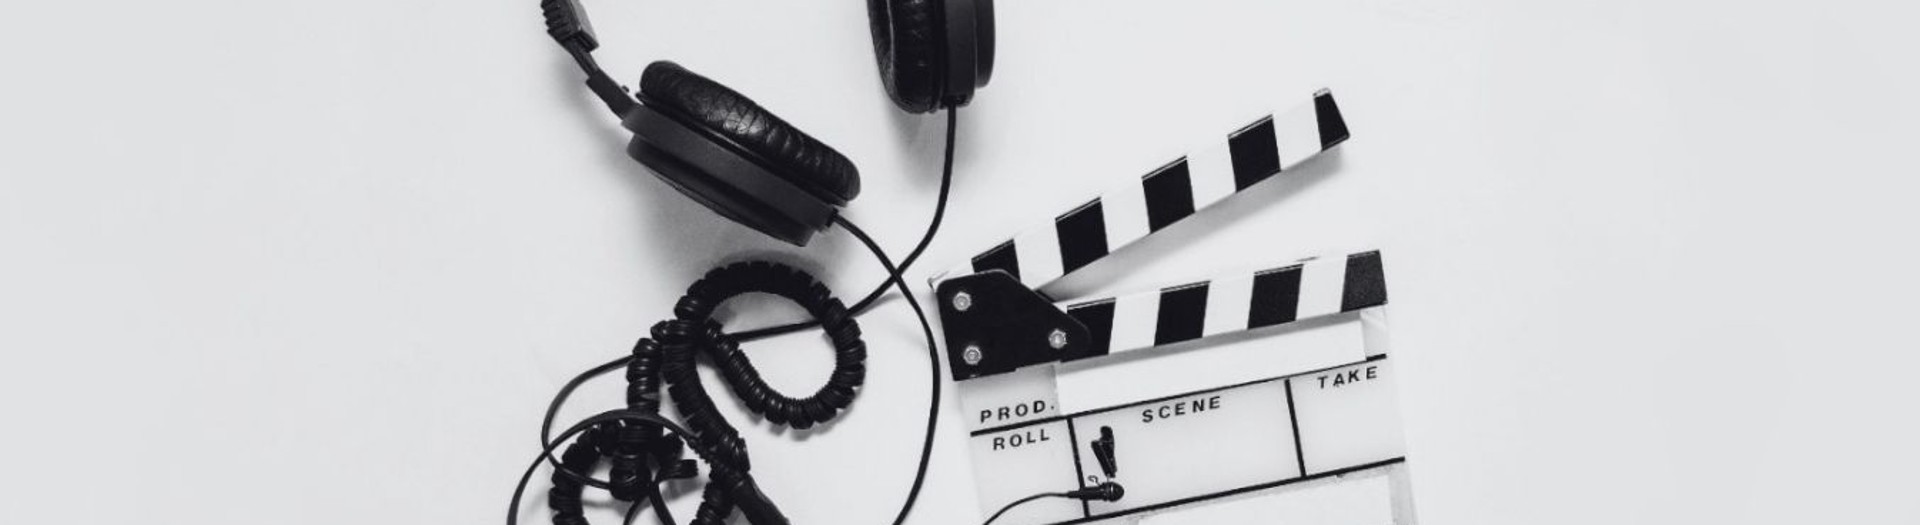 Kopfhörer, Filmklappe und Mikrofon vor weißem Hintergrund